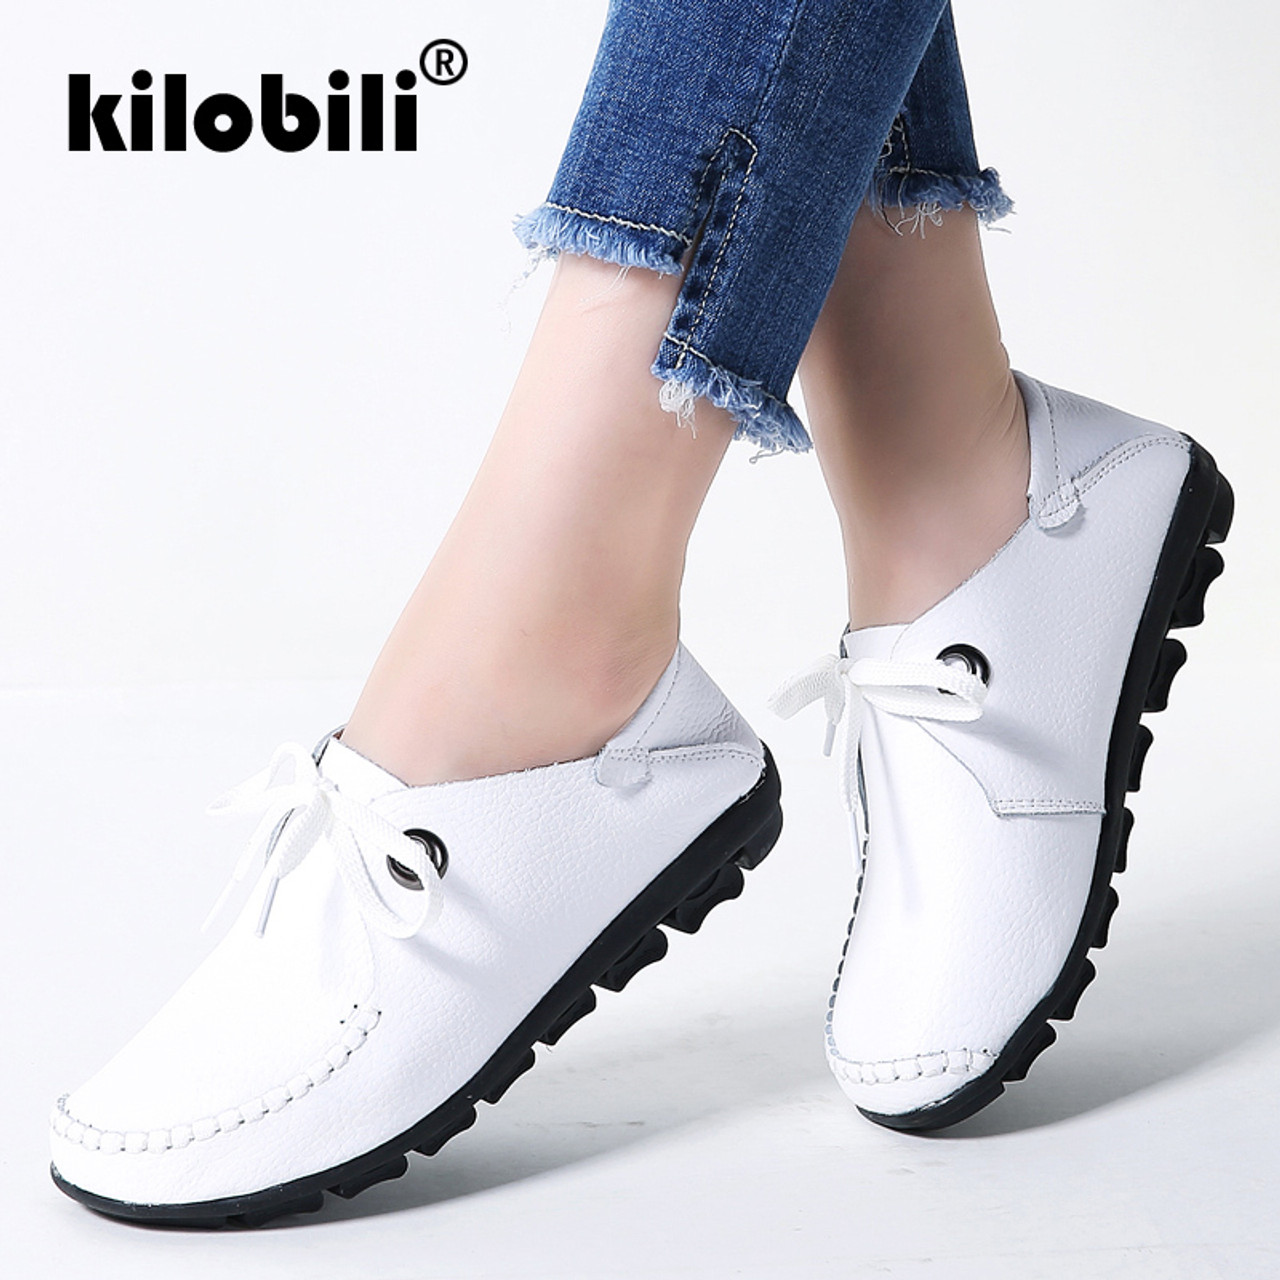 kilobili 2018 Spring women flats shoes 